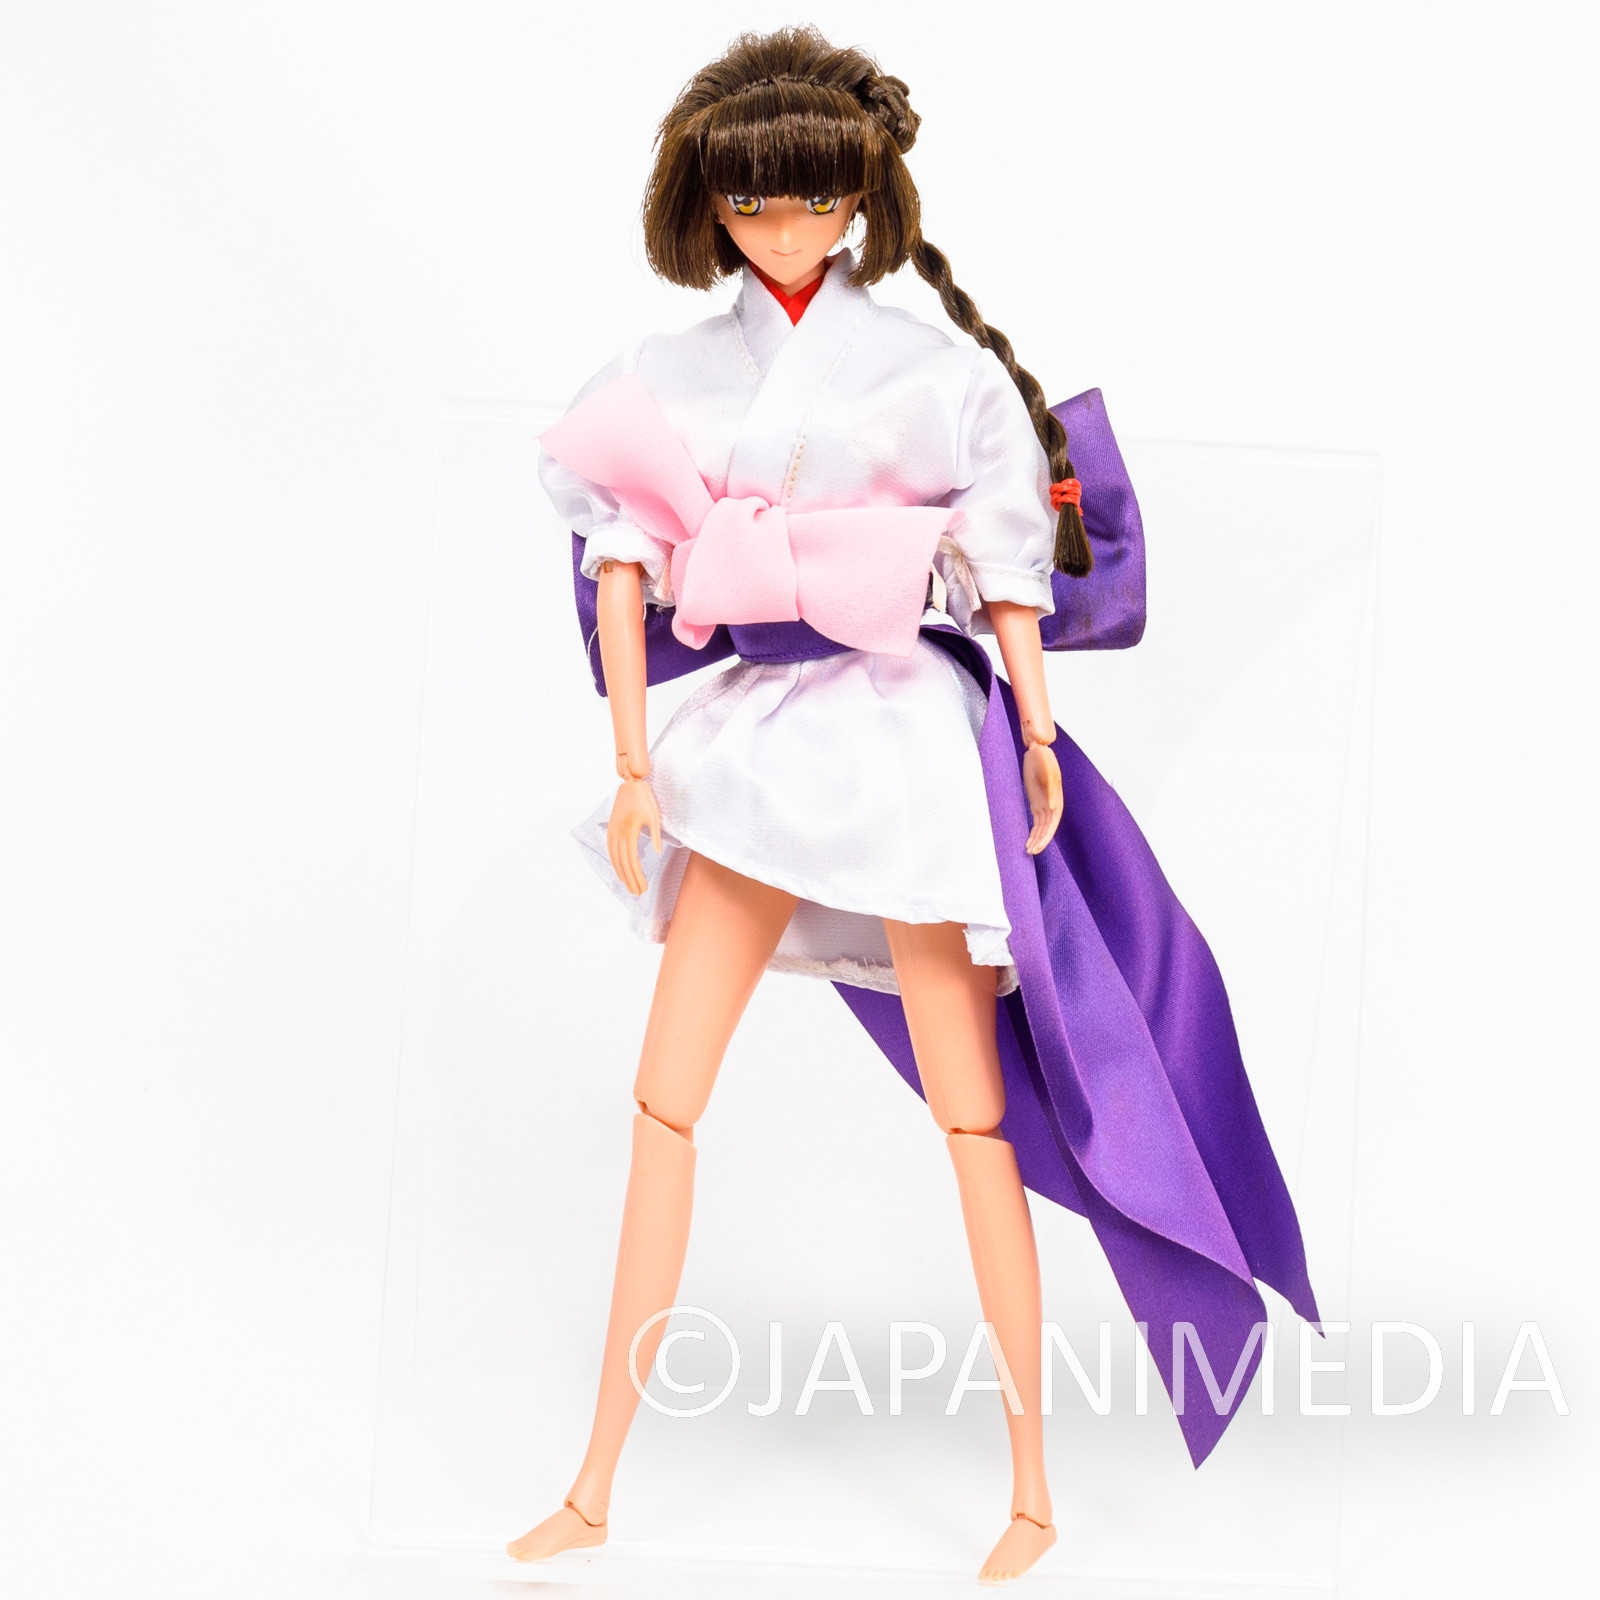 Retro RARE! Vampire Princess Miyu Action Figure Doll TAKARA JAPAN